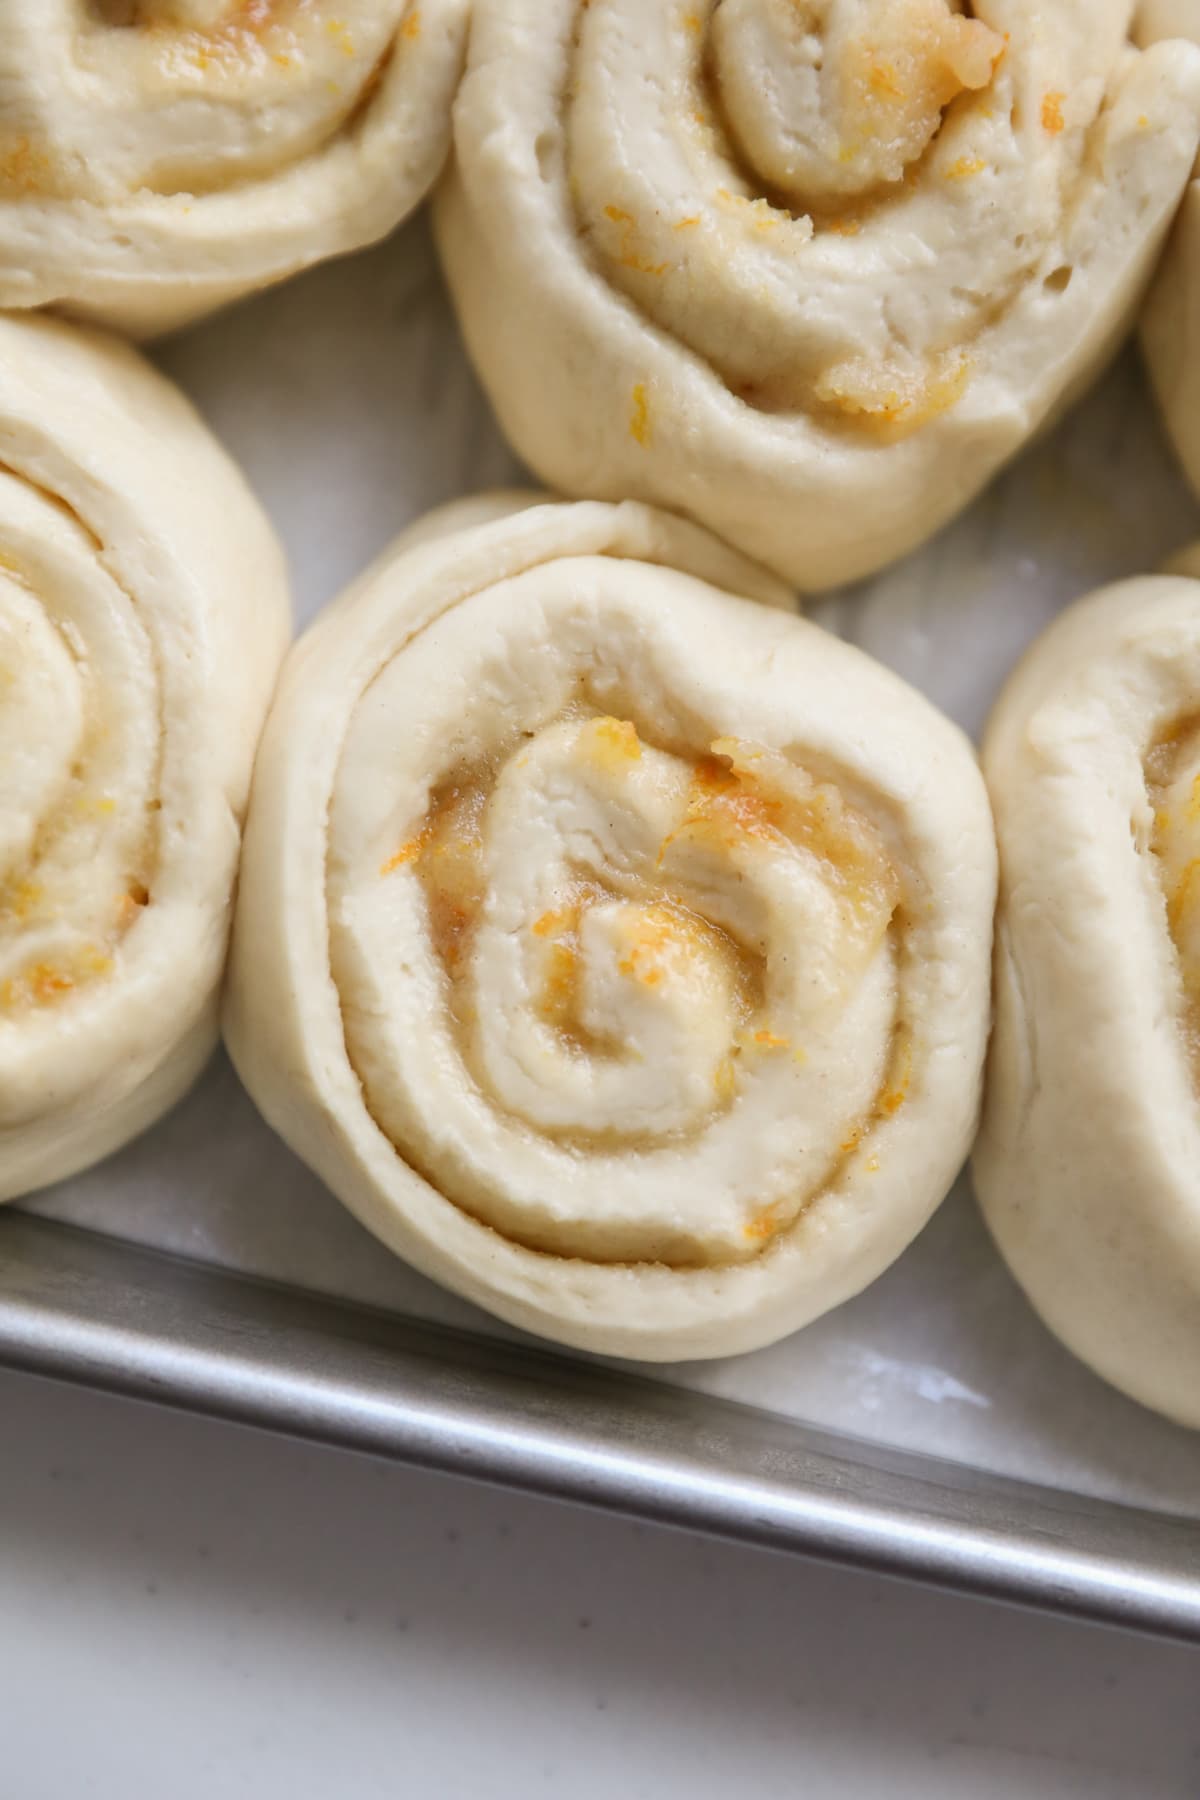 risen orange rolls in baking sheet